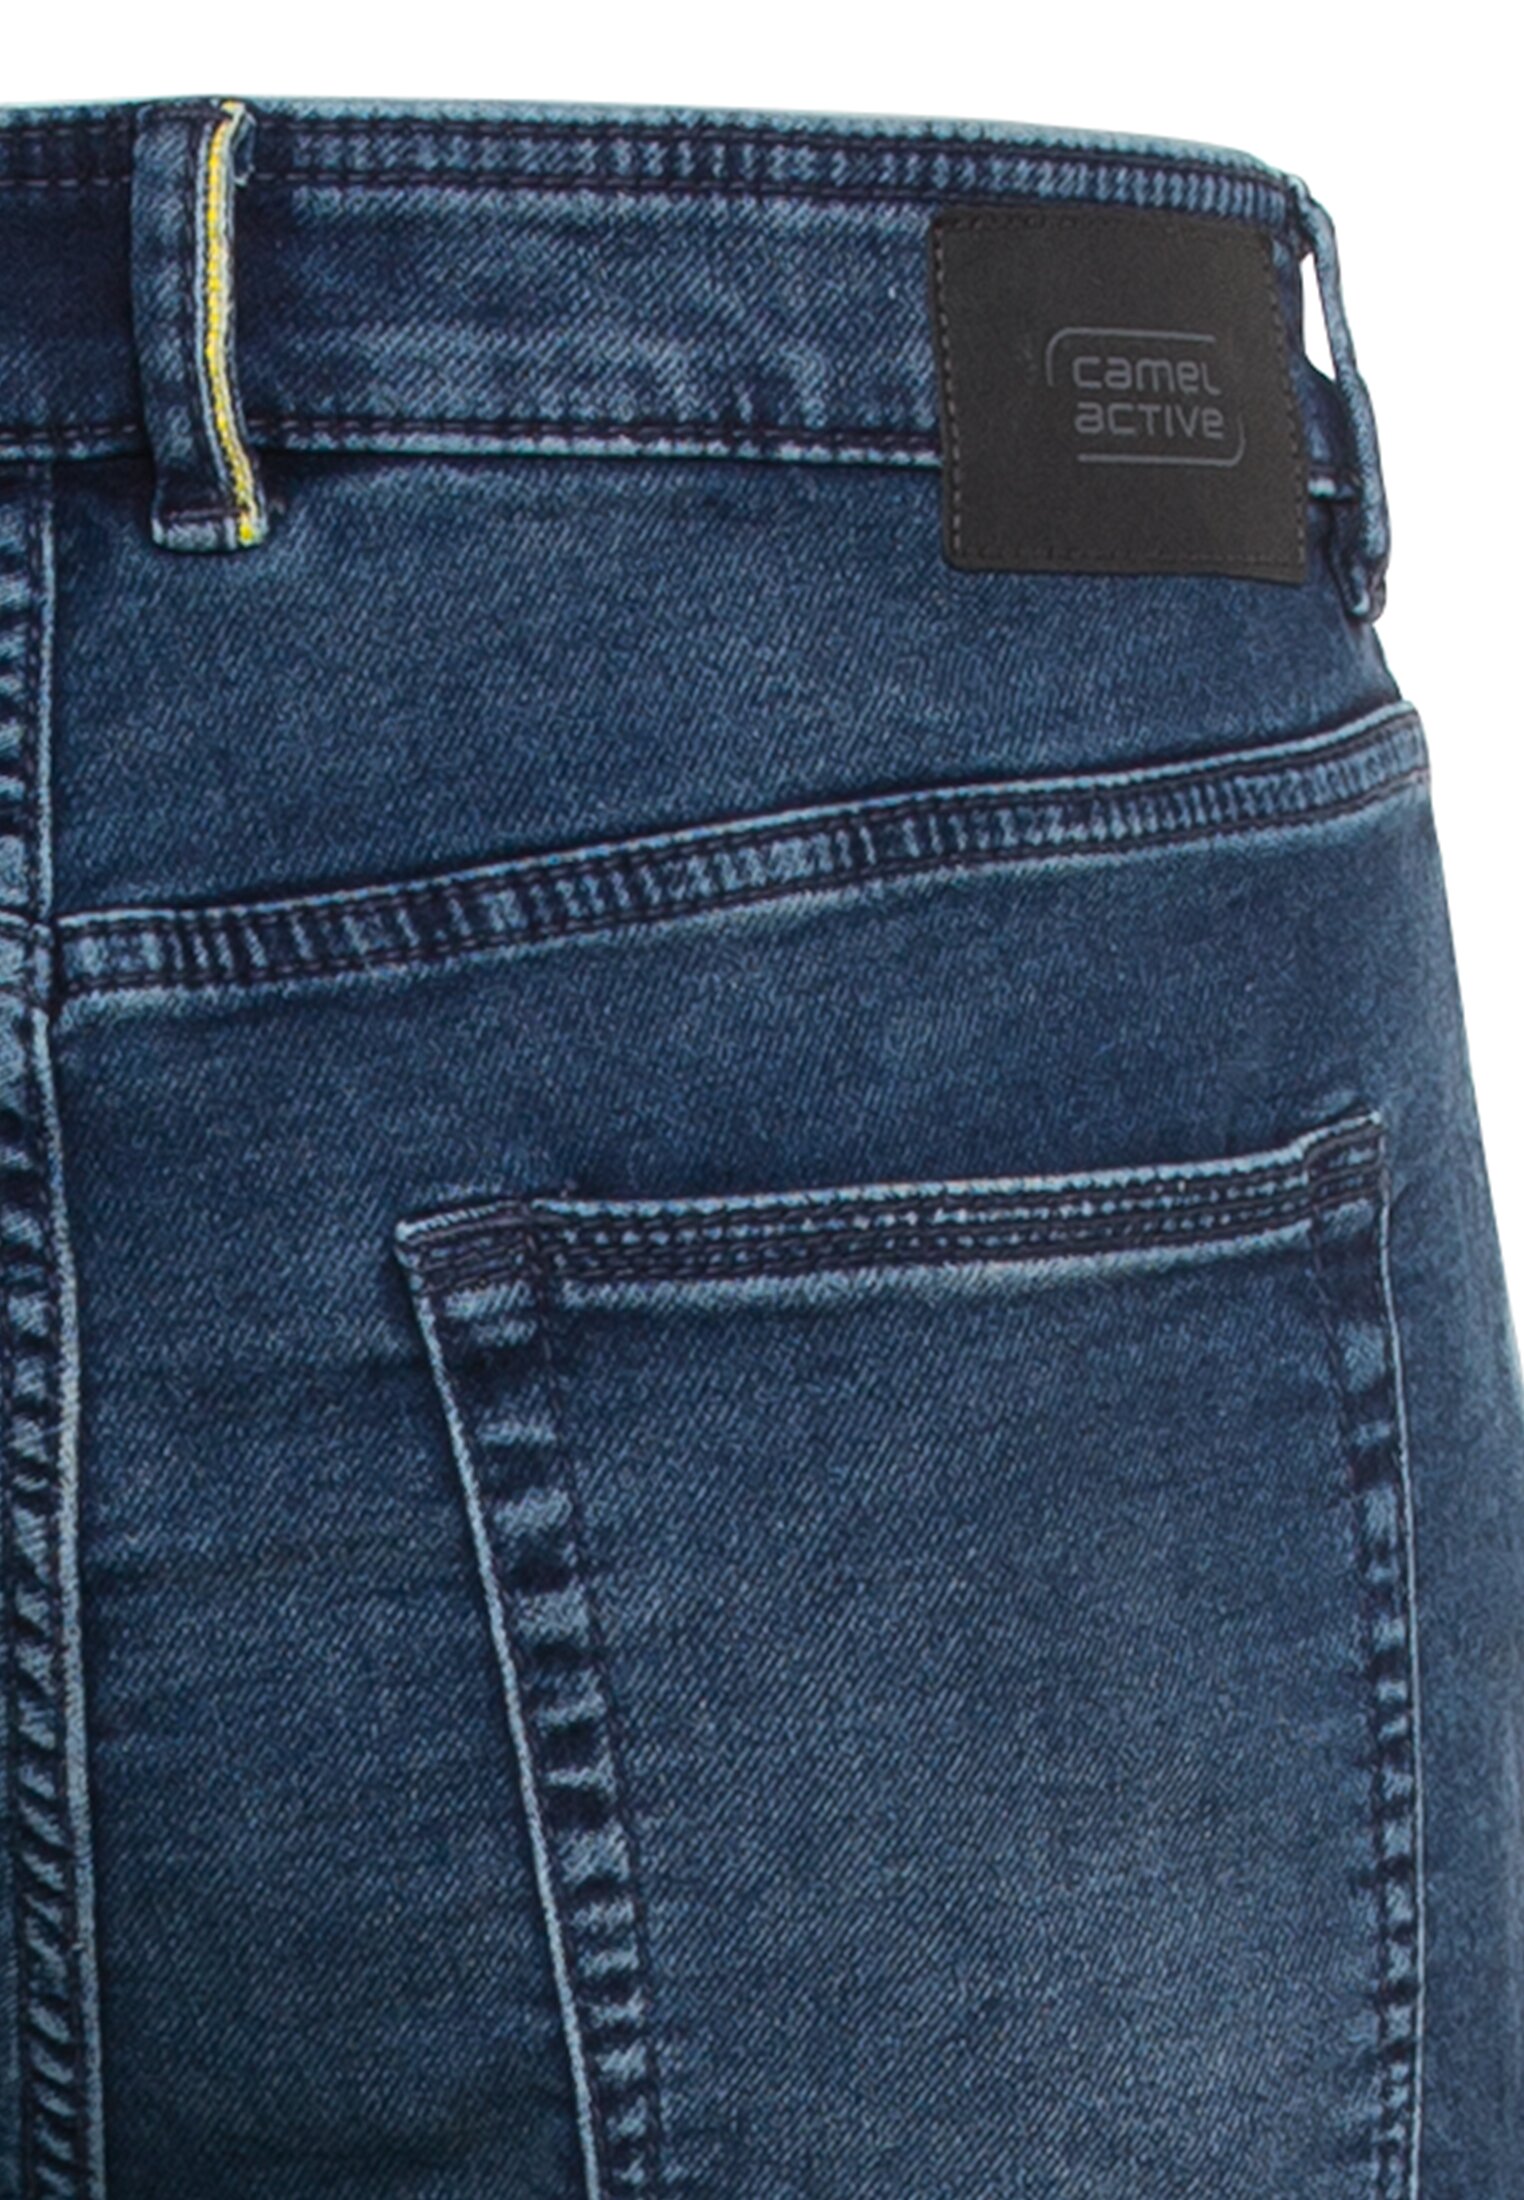 5 Pocket Denim Shorts im Slim Fit